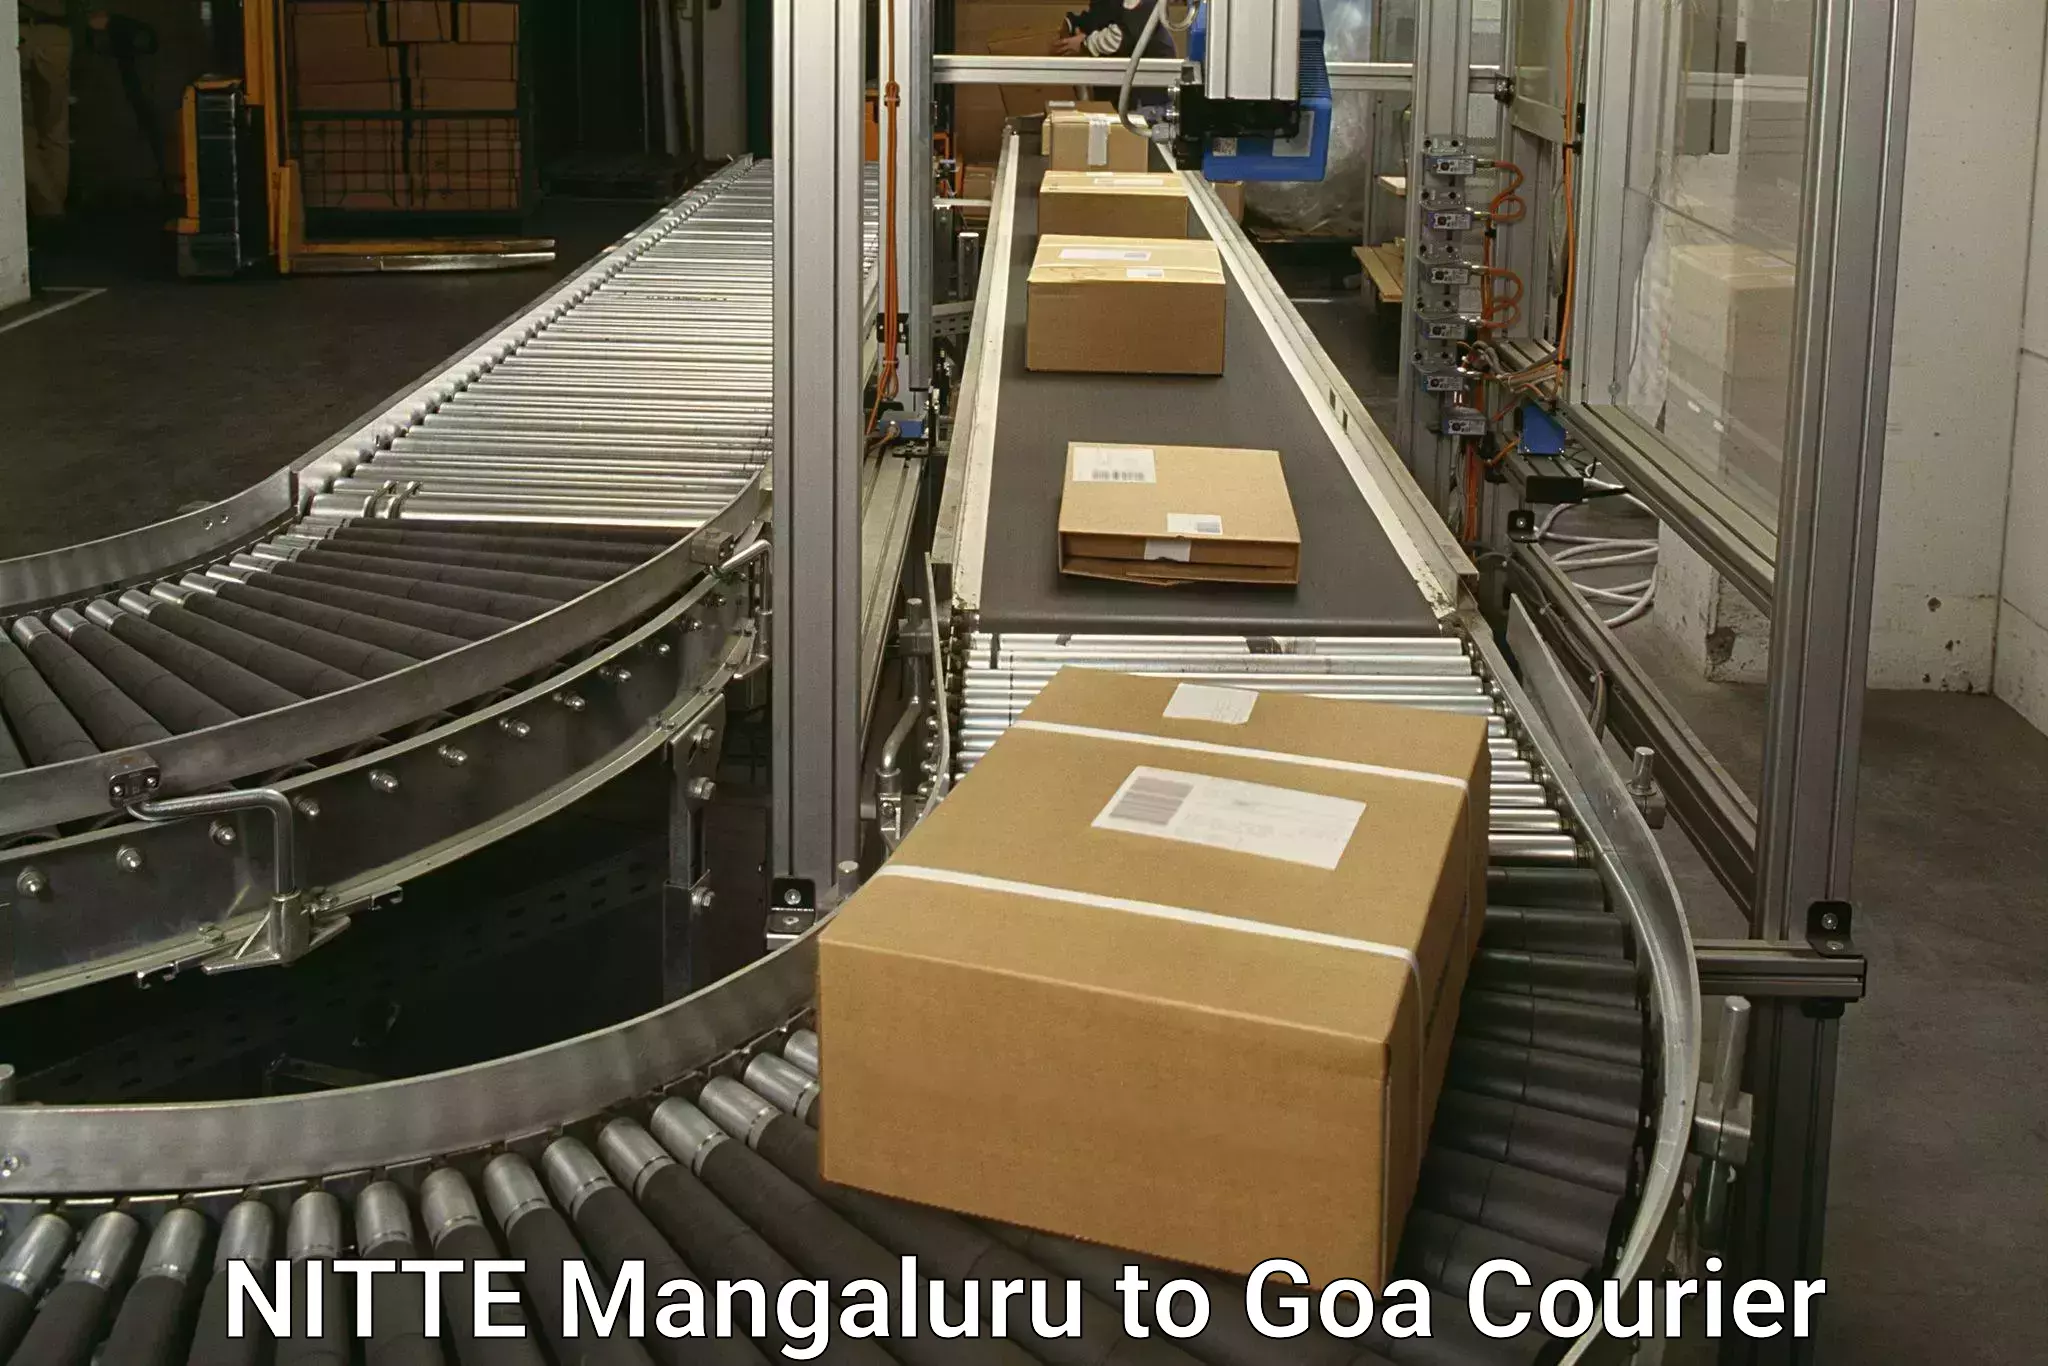 Global shipping networks NITTE Mangaluru to IIT Goa